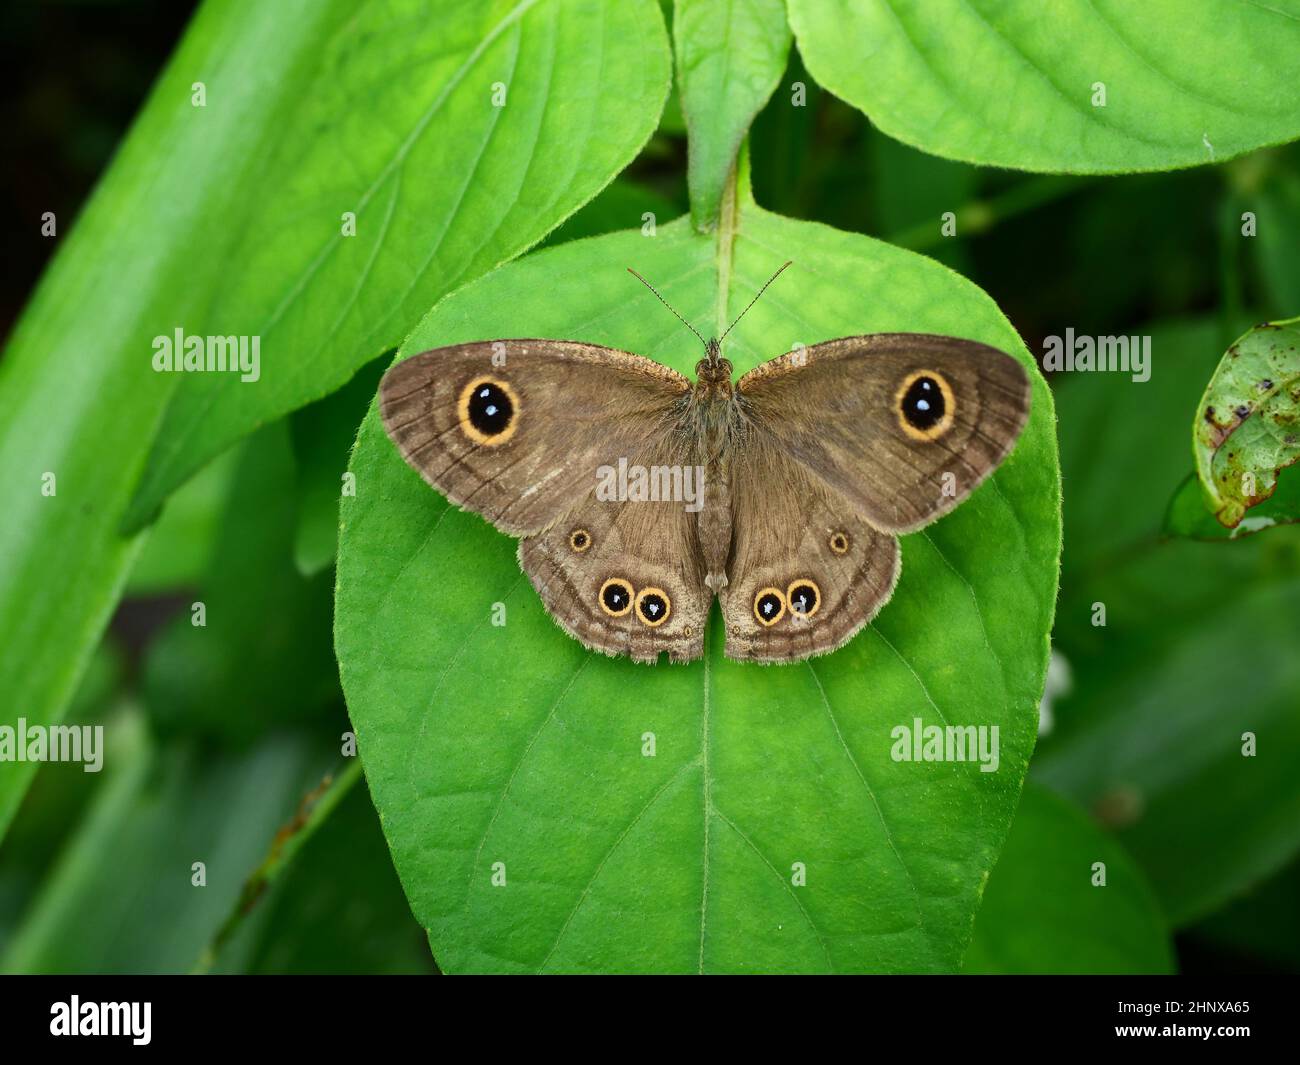 La mariposa común de cinco anillos en la hoja con fondo verde natural , el patrón similar a los ojos amarillos con punto azul en círculo negro en el ala Foto de stock